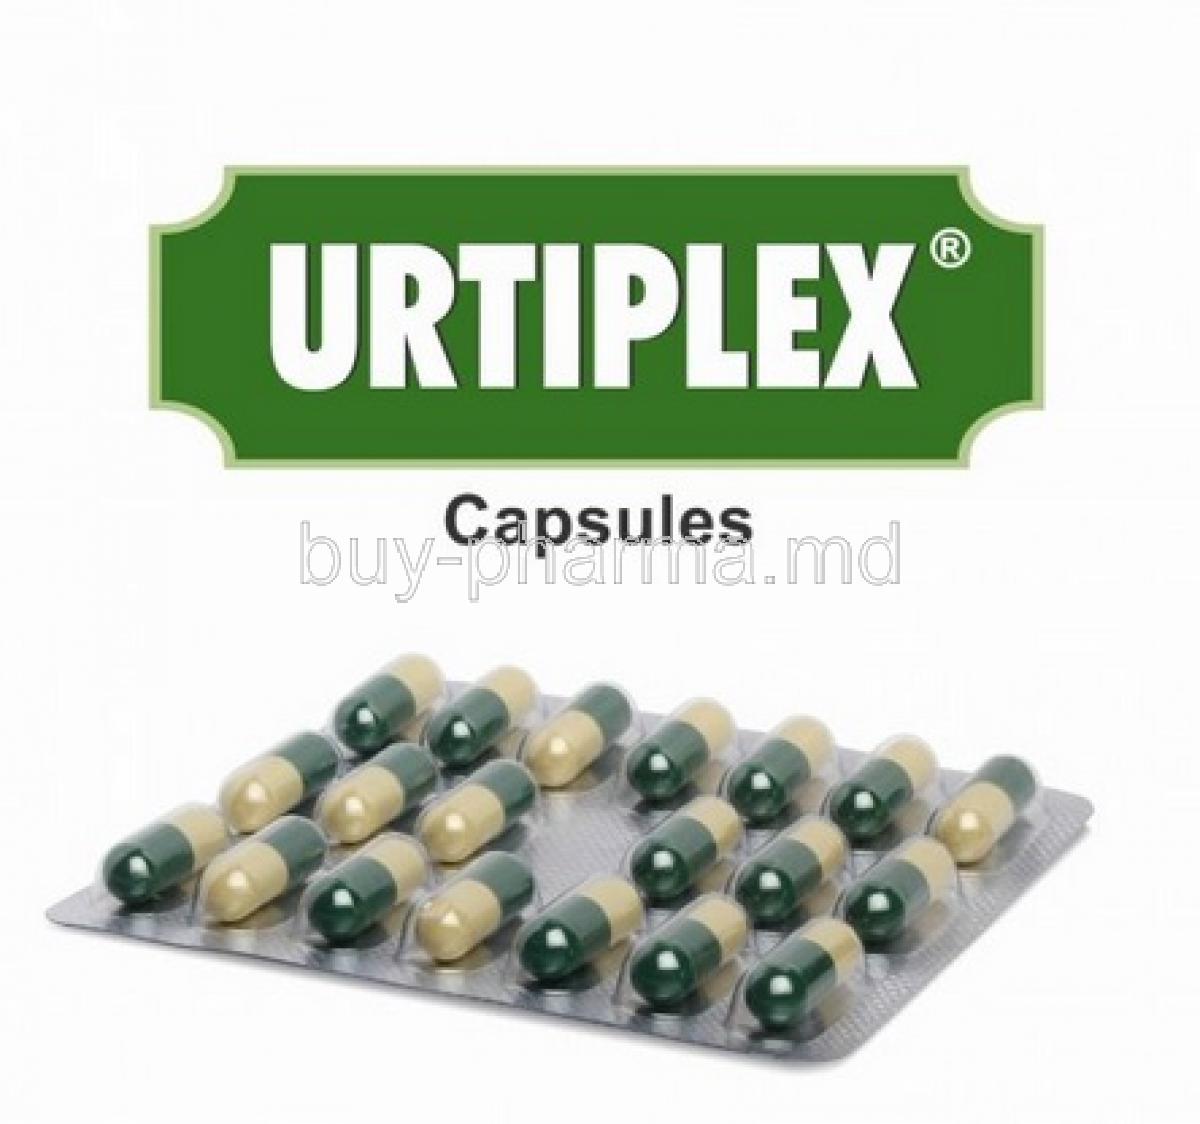 Urtiplex box and capsules